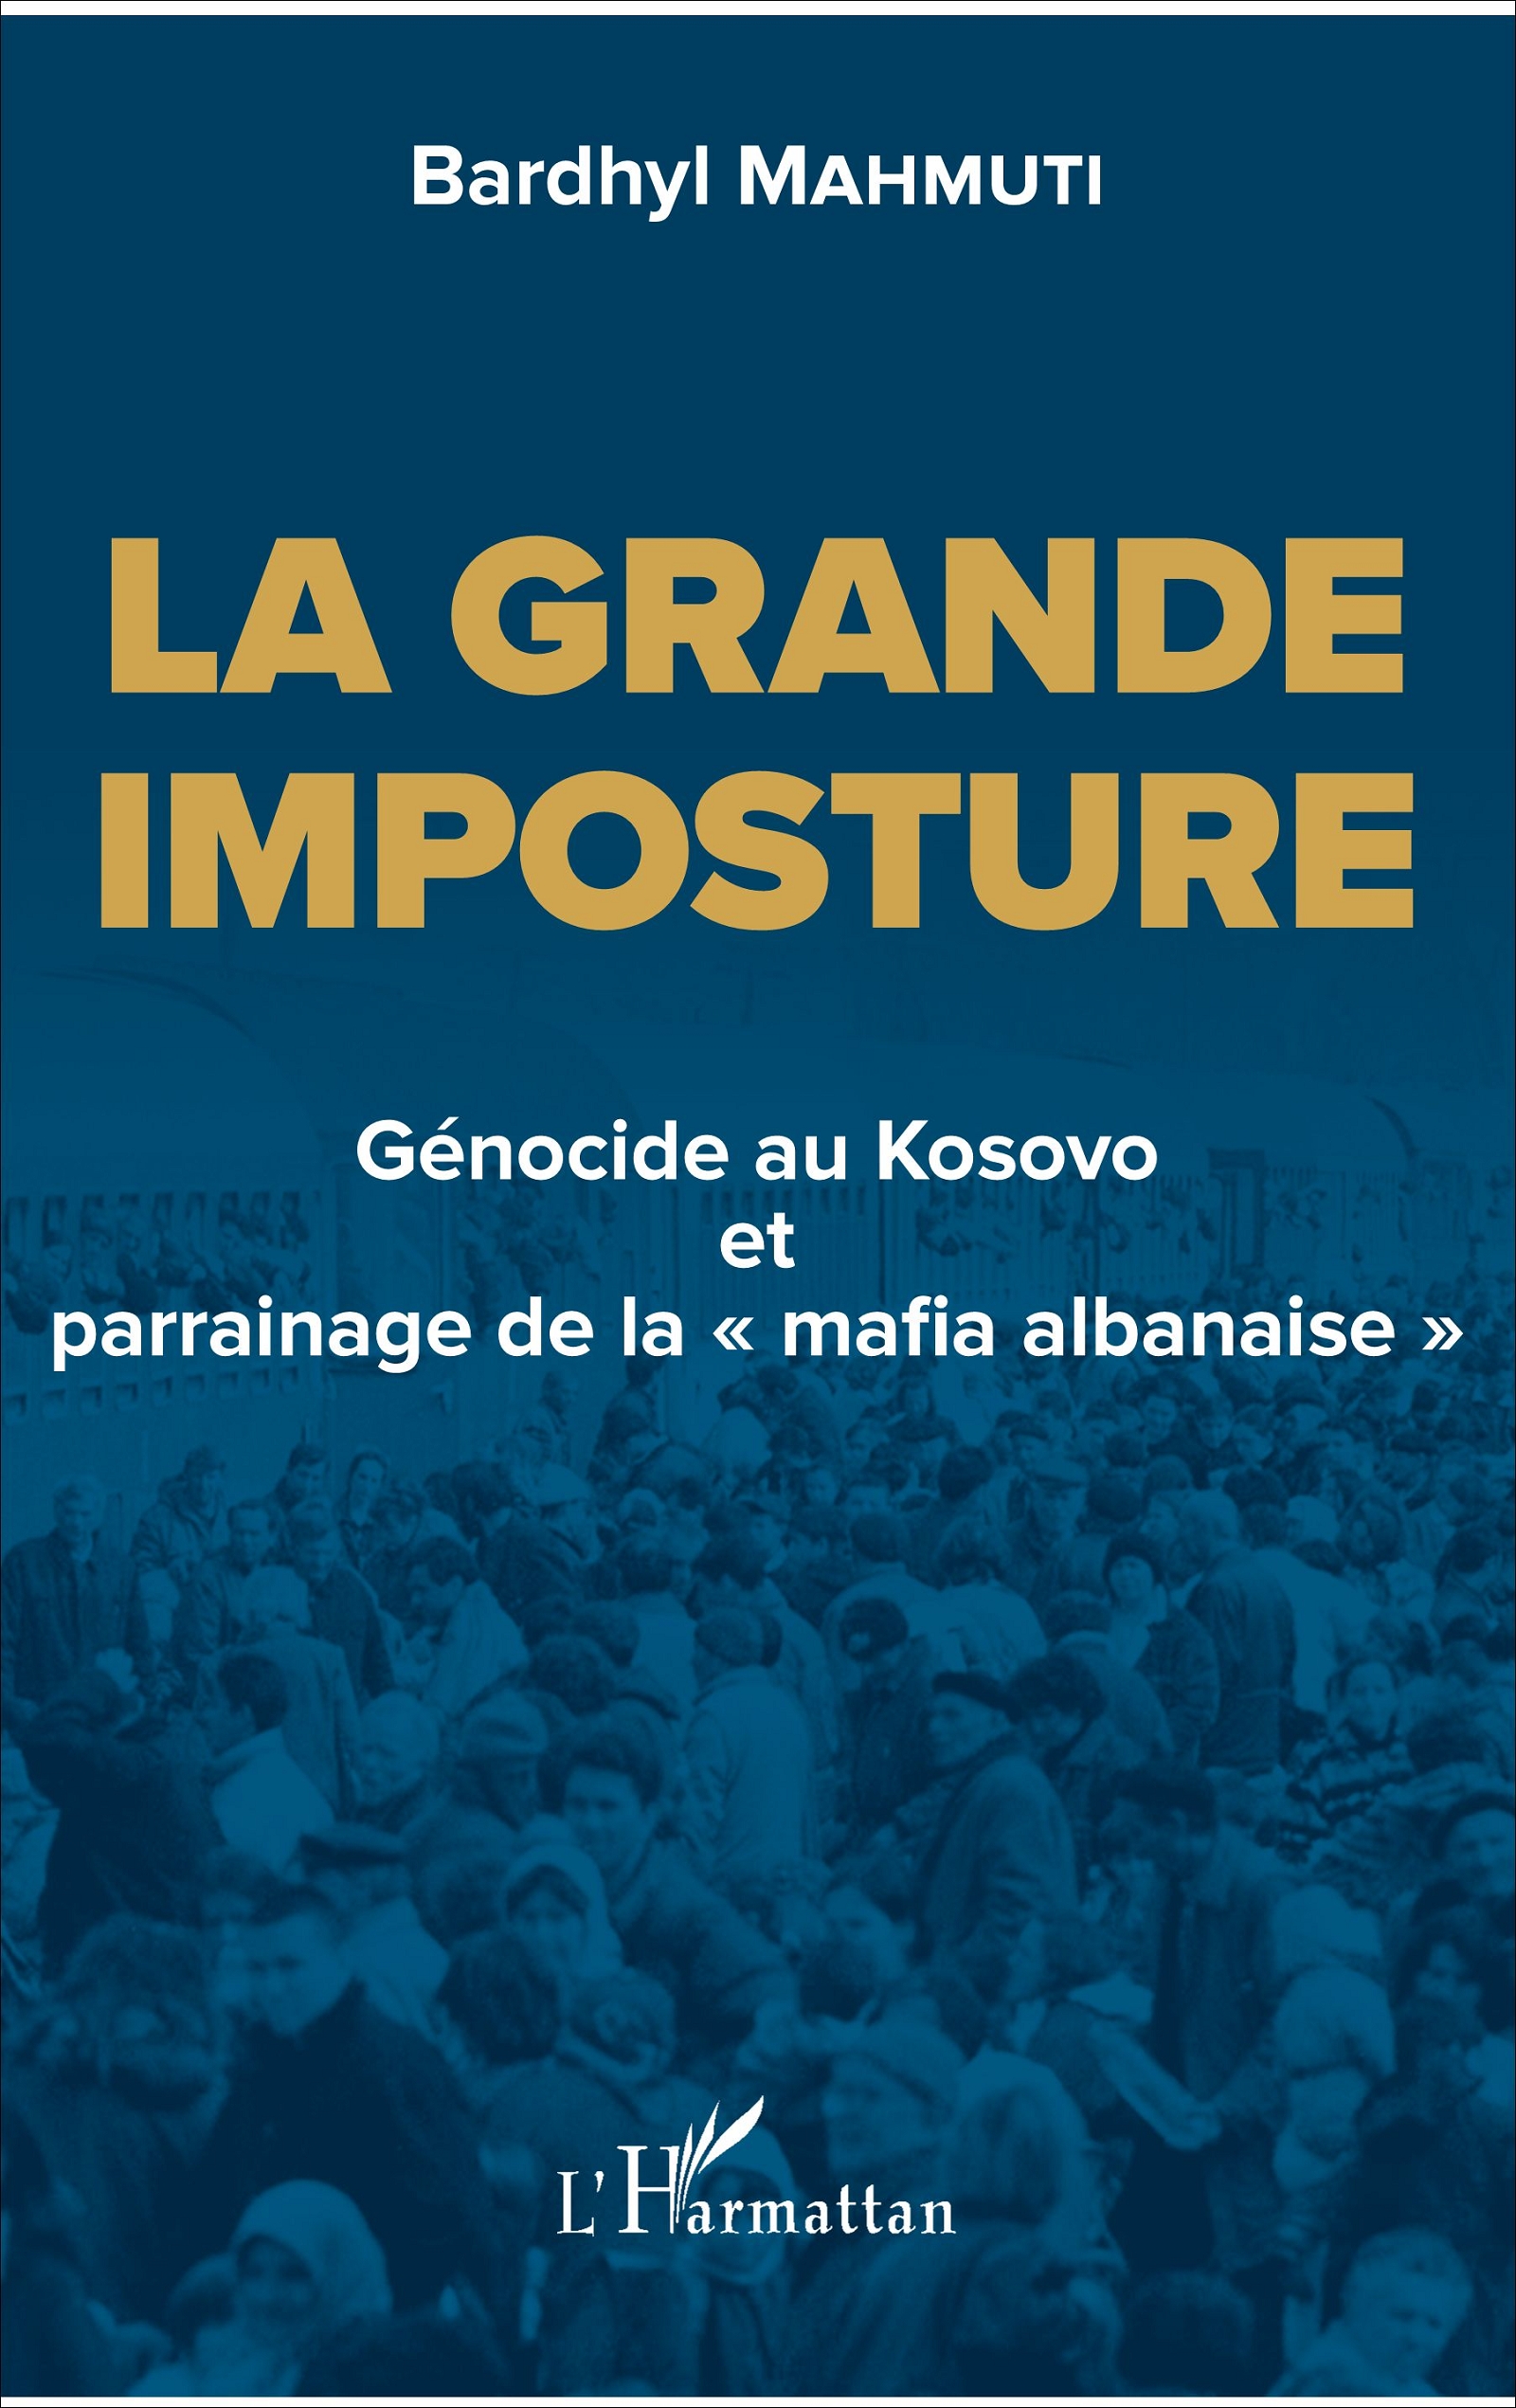 Doli nga shtypi libri i Bardhyl Mahmutit, në gjuhën frënge: Mashtrimi i Madh: Gjenocidi në Kosovë dhe kumbaria e “mafies shqiptare